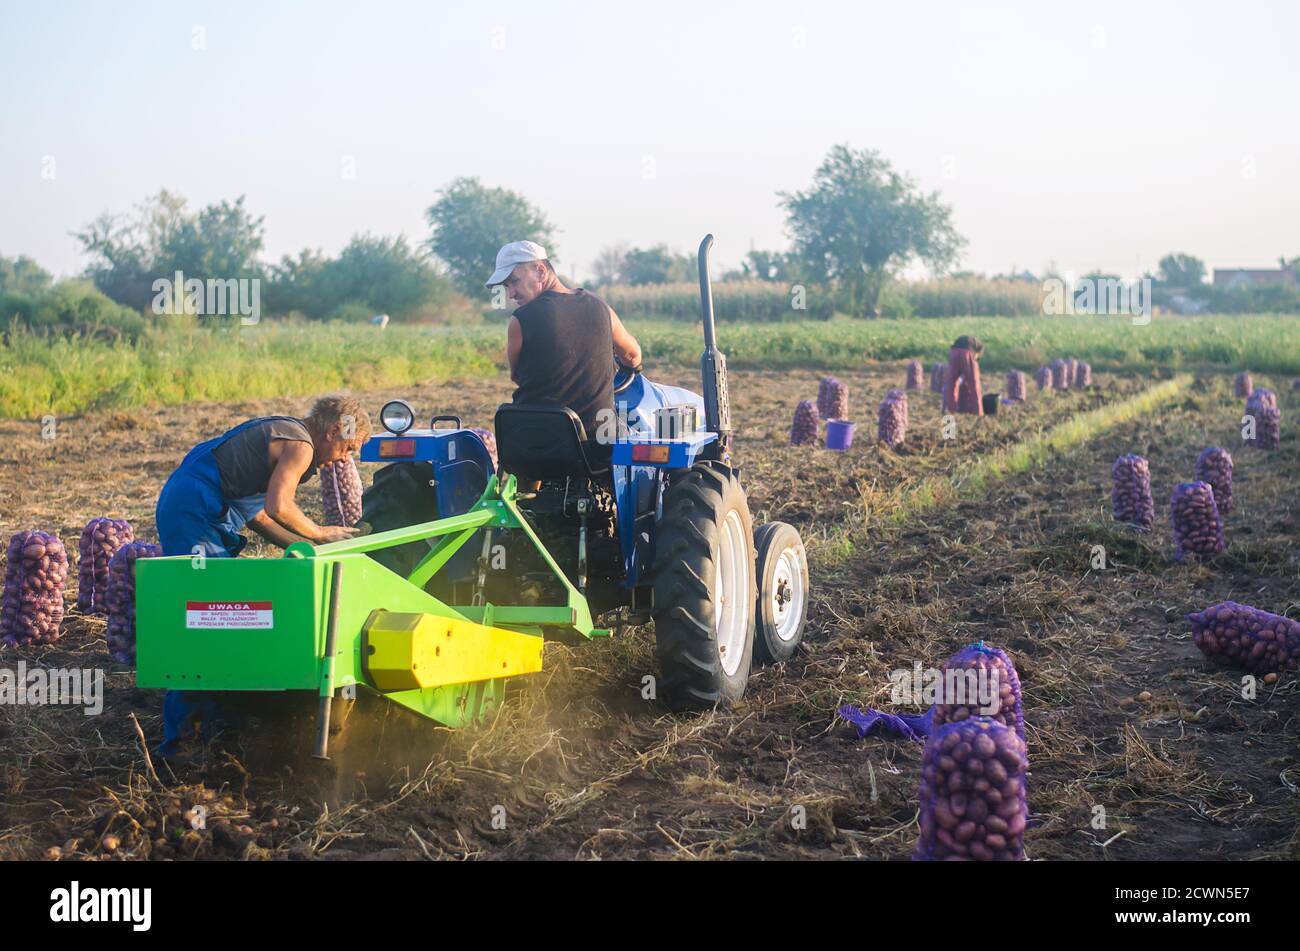 CHERSON OBLAST, UKRAINE - 19. September 2020: Die Landarbeiter auf einem Traktor graben Kartoffeln aus. Kampagne zur Kartoffelernte. Landwirtschaft und Landwirtschaft. Sorti Stockfoto